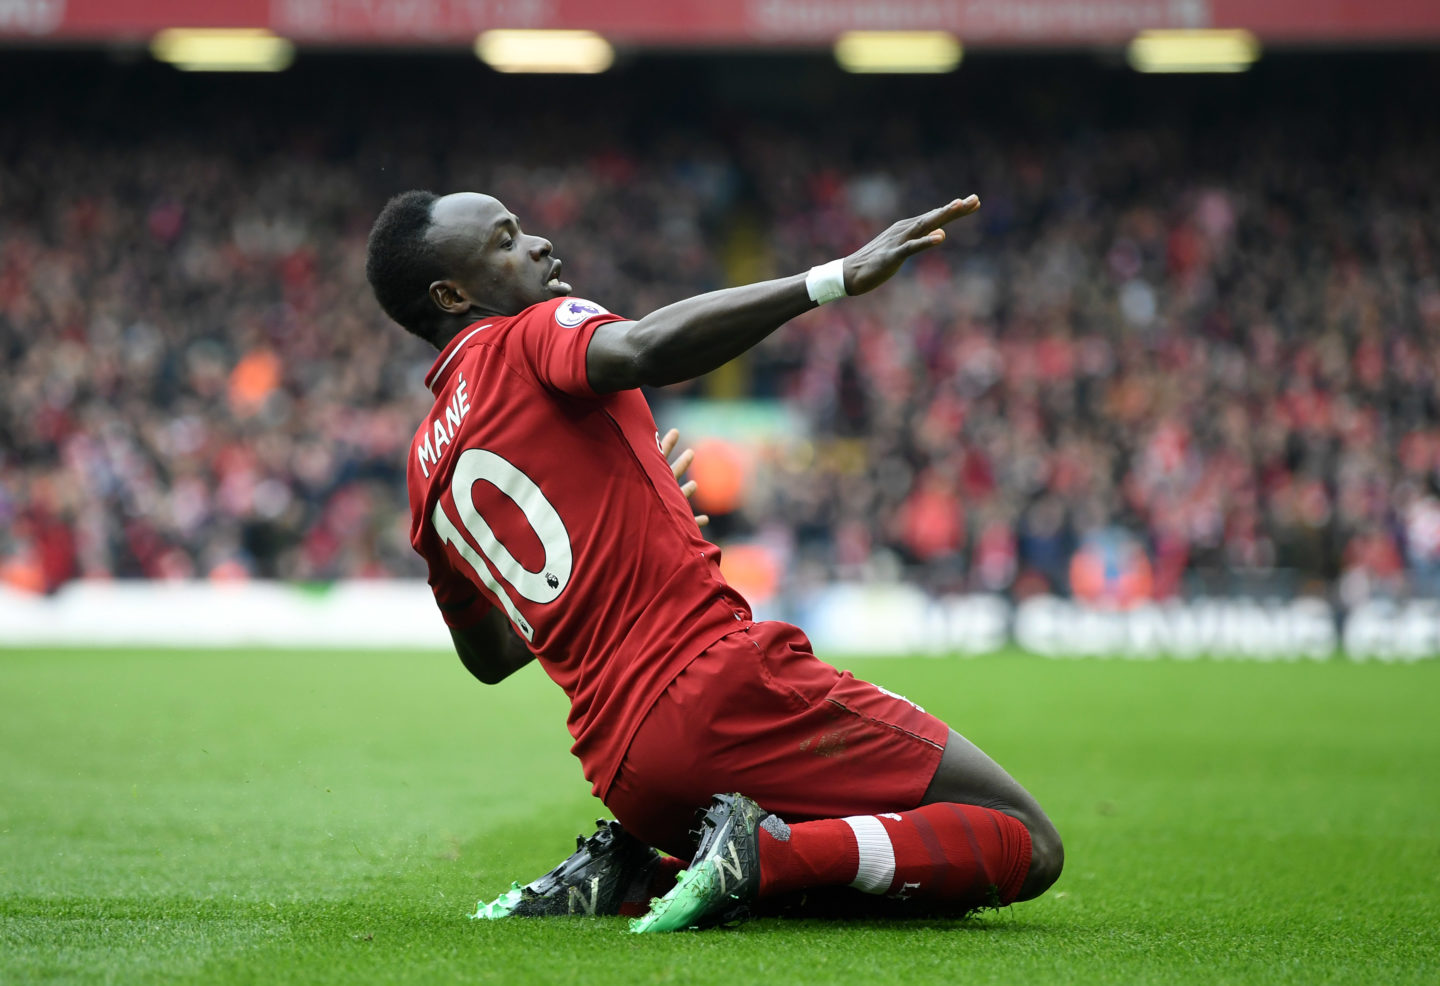 Drogba 1er, Mané 5ème… le top 5 des meilleurs transferts de joueurs africains en Premier League